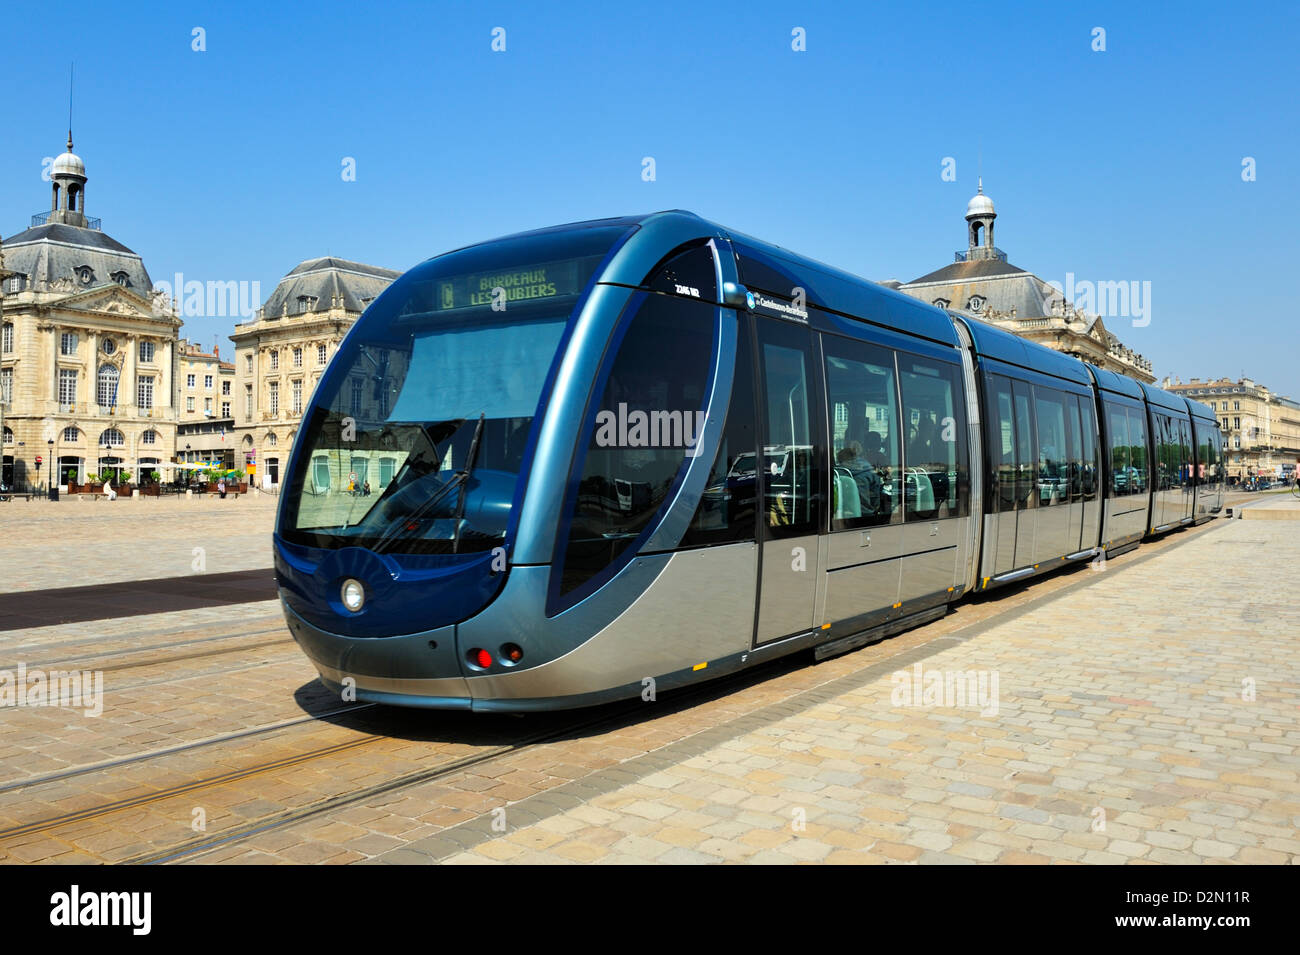 Tram, Place de la Bourse, Bordeaux, UNESCO World Heritage Site, Gironde, Aquitaine, France, Europe Stock Photo